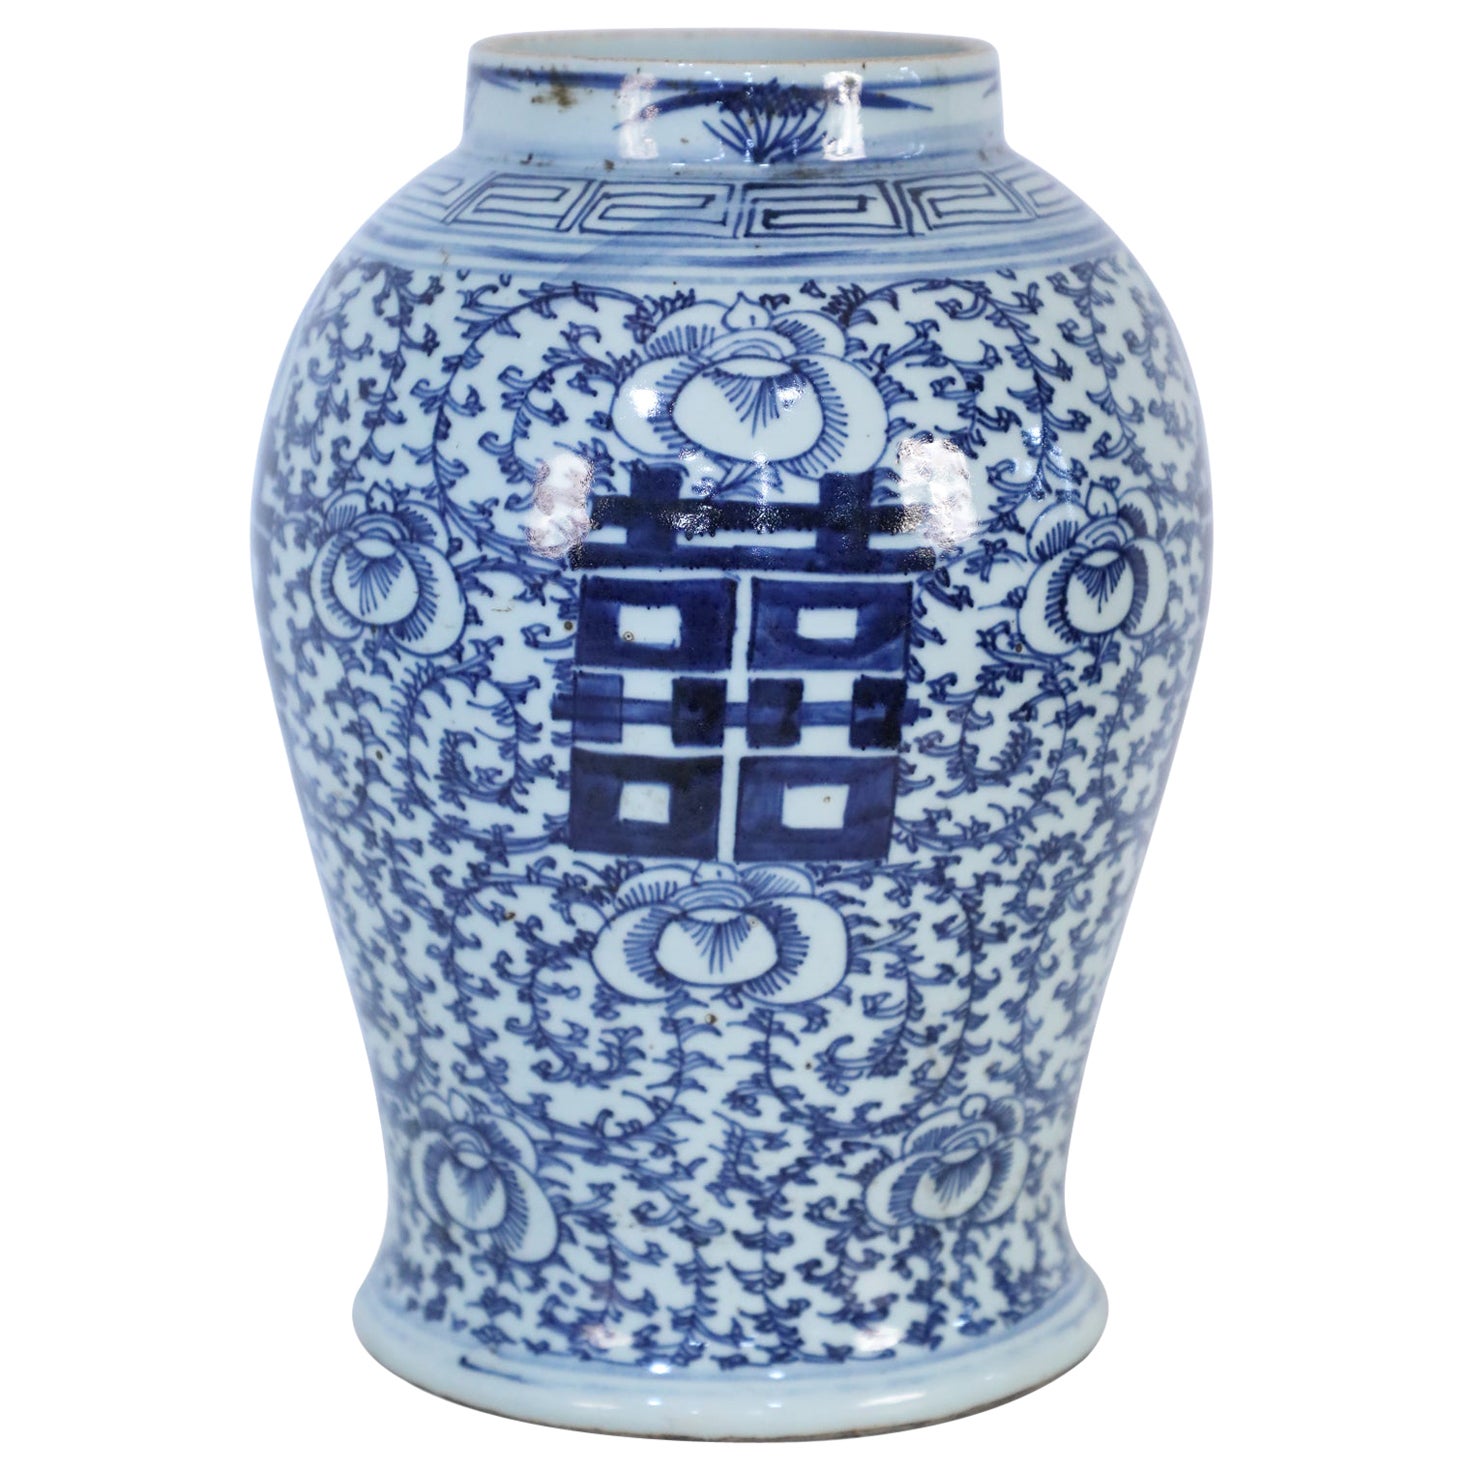 Chinesische chinesische Urne mit weißen und blauen Akzenten und Blumen